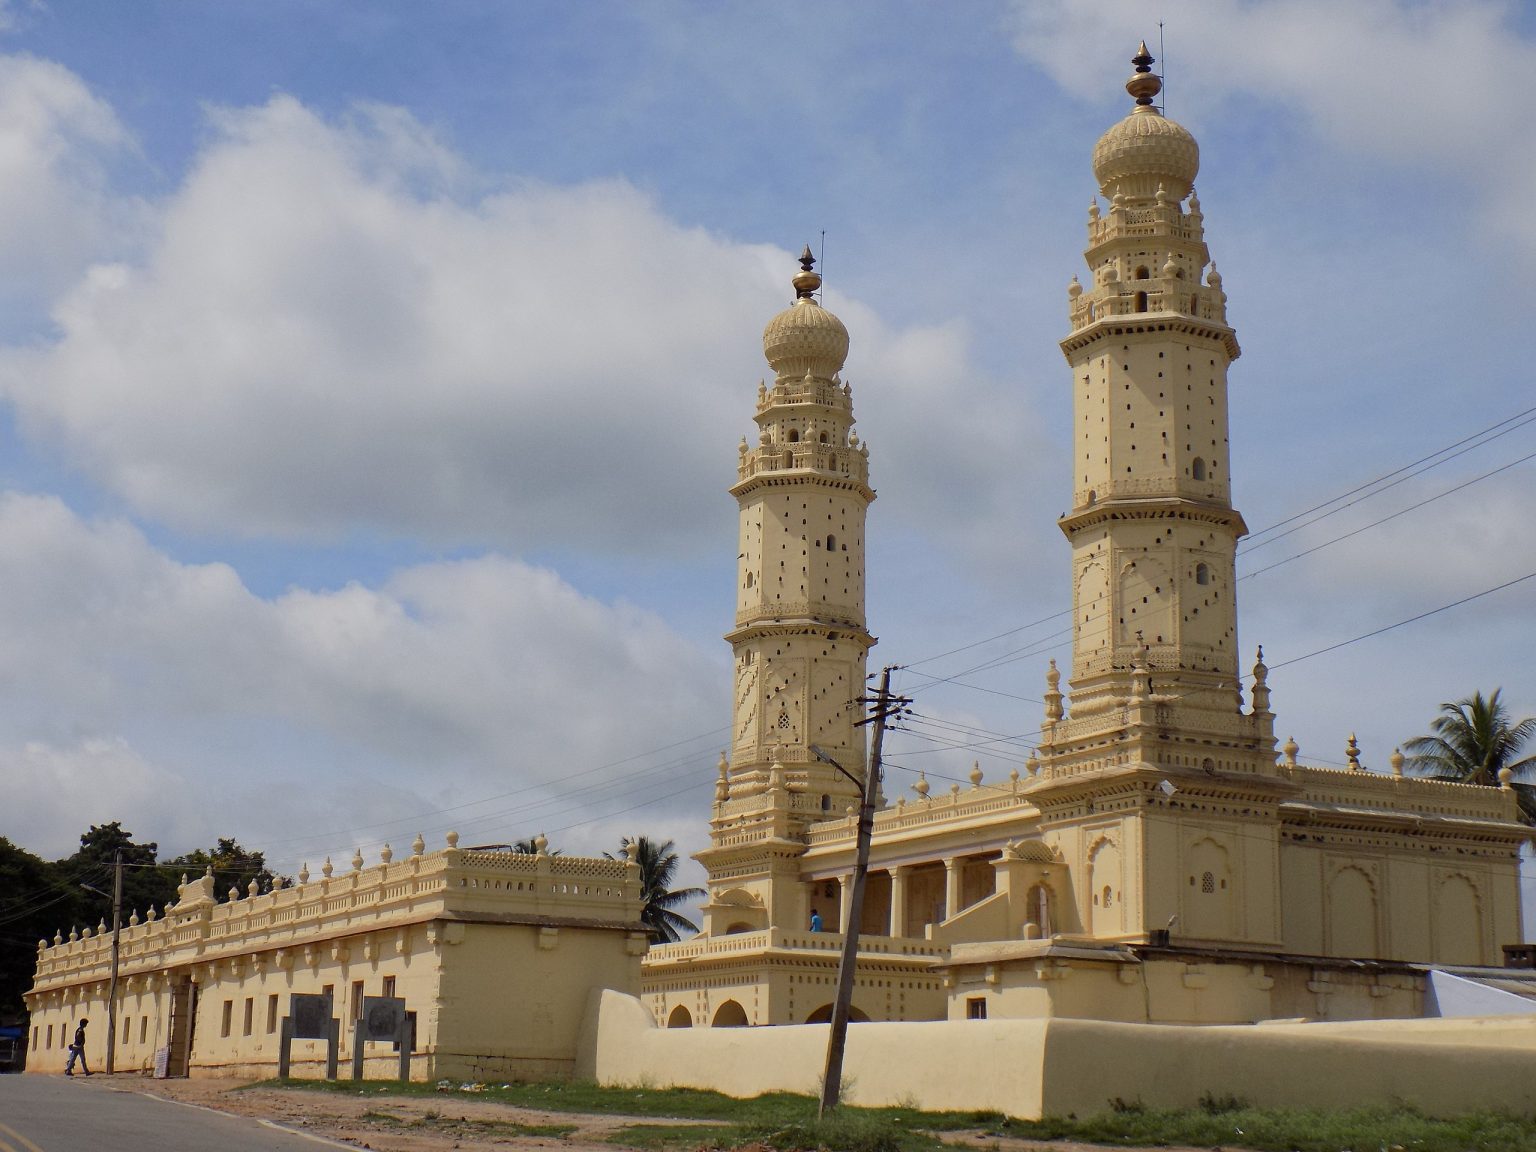 کرناٹک کے سری رنگا پٹنم  میں واقع جامع مسجد۔ (فوٹو بہ شکریہ: وکی پیڈیا)